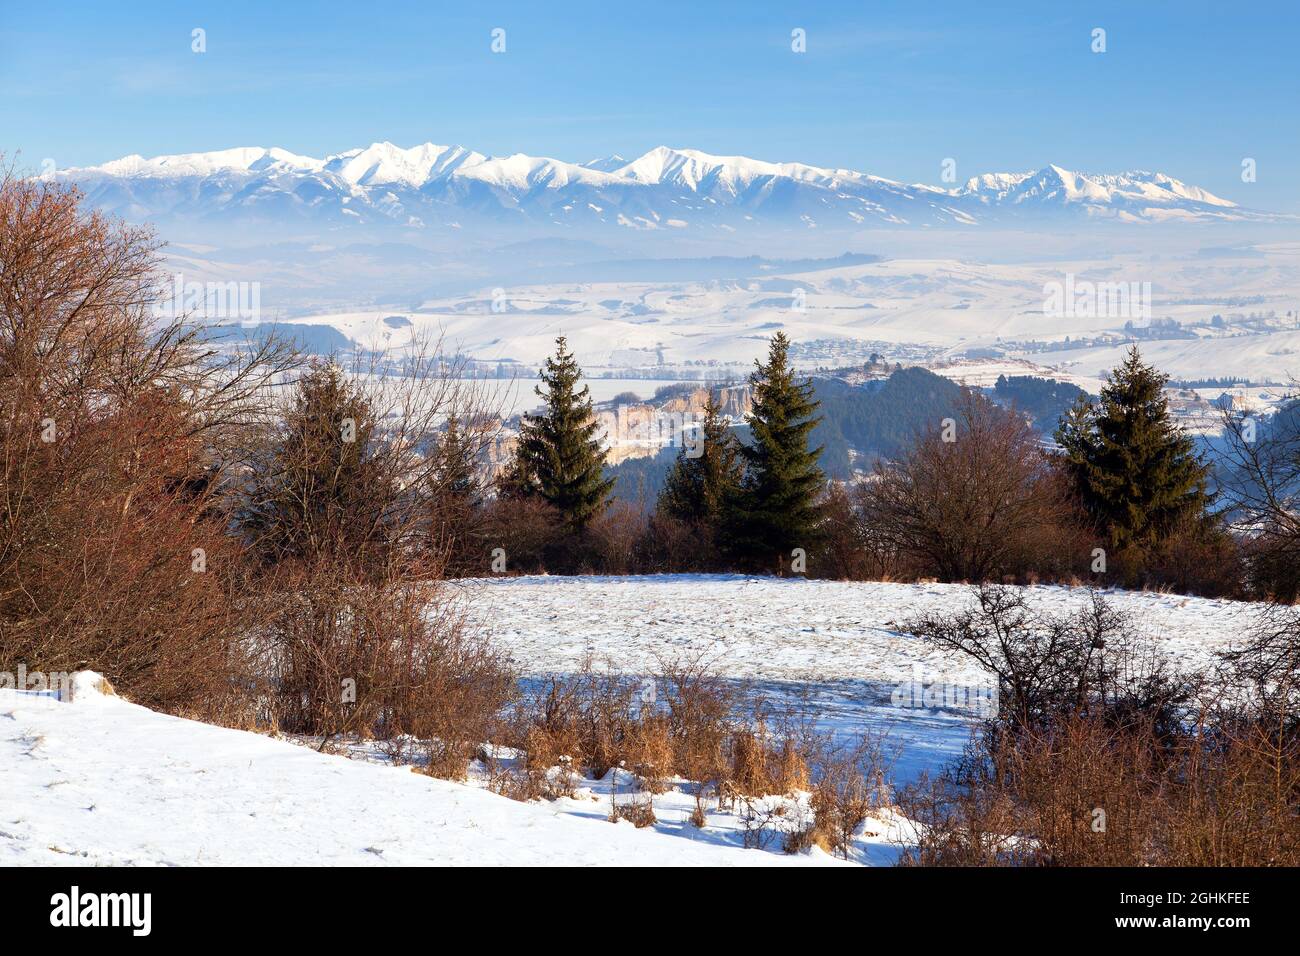 Vue panoramique sur les montagnes des Hautes Tartas depuis les montagnes de Fatra, Slovaquie Banque D'Images